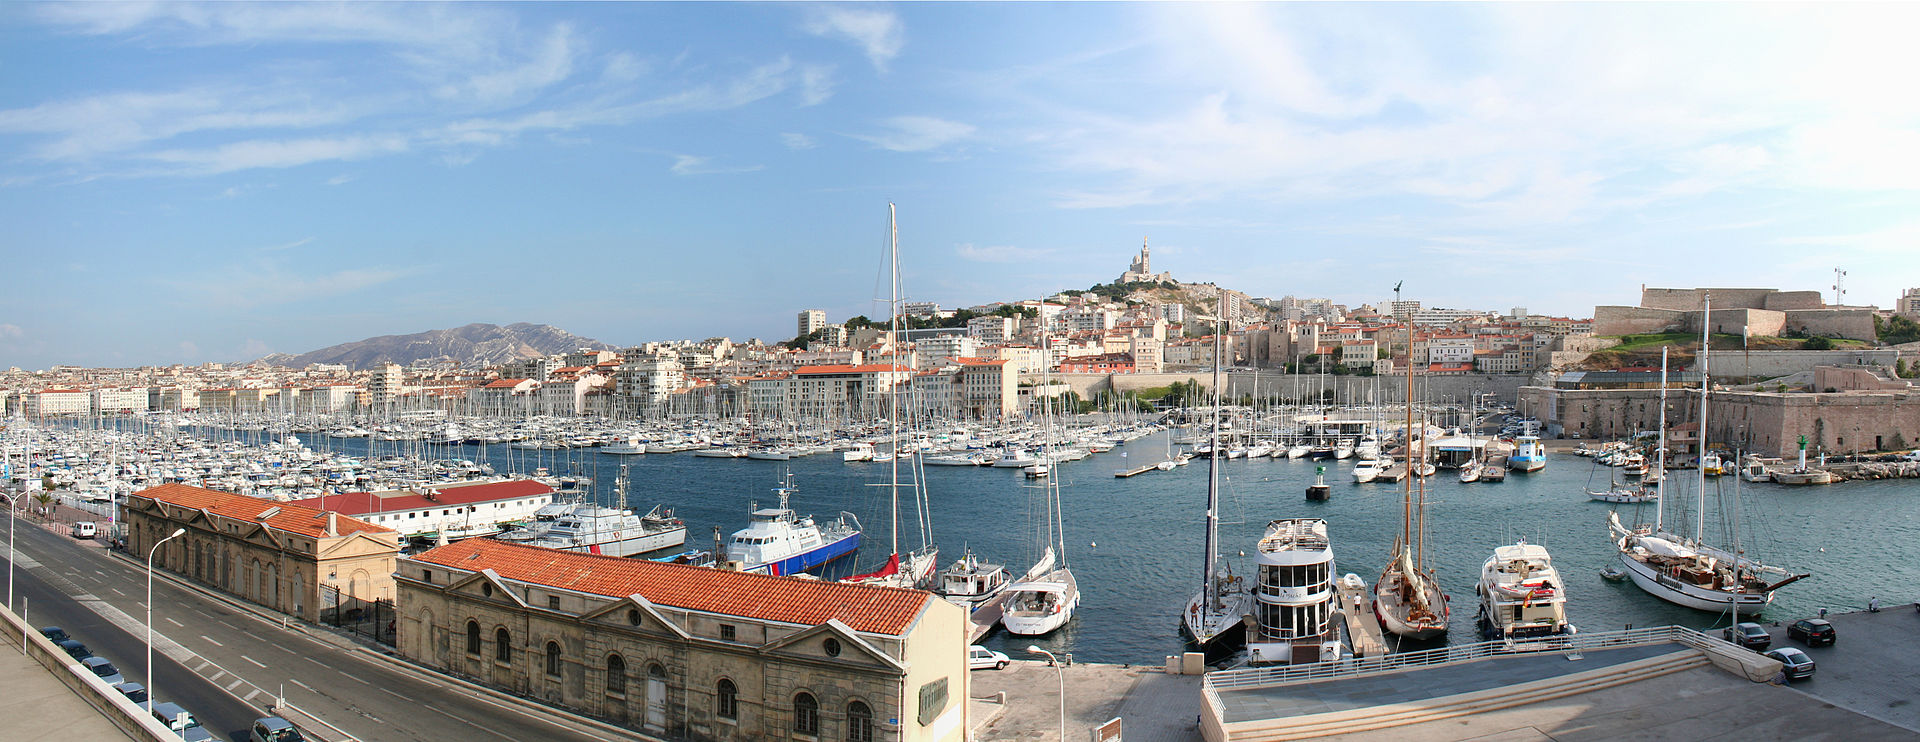 Vieeux-port, Marseille